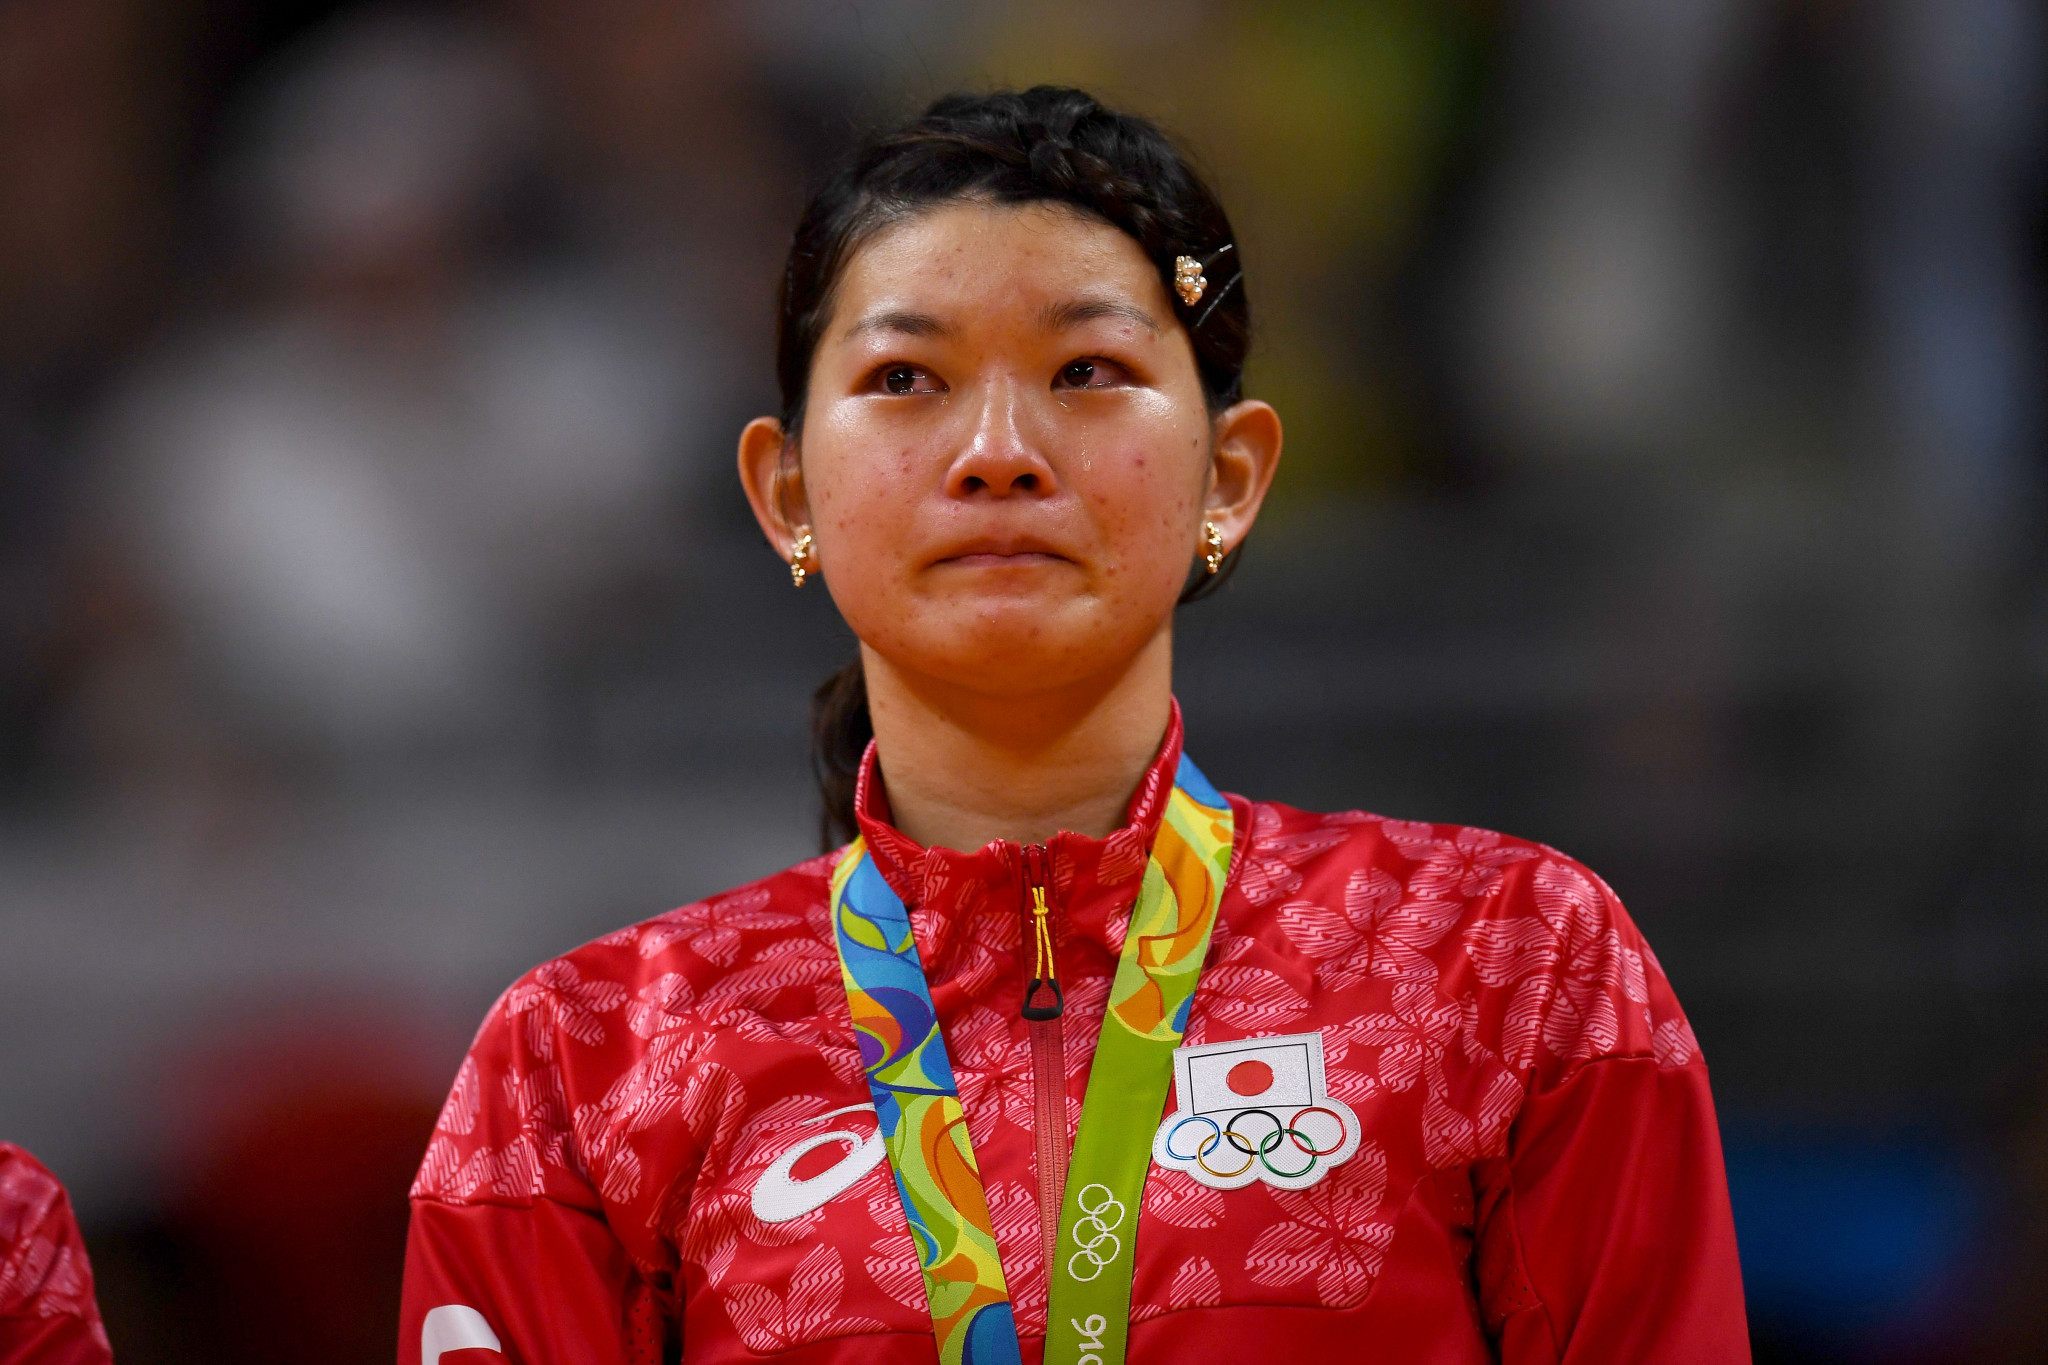 Ayaka Takahashi won gold with Misaki Matsutomo at the Rio 2016 Olympic Games ©Getty Images